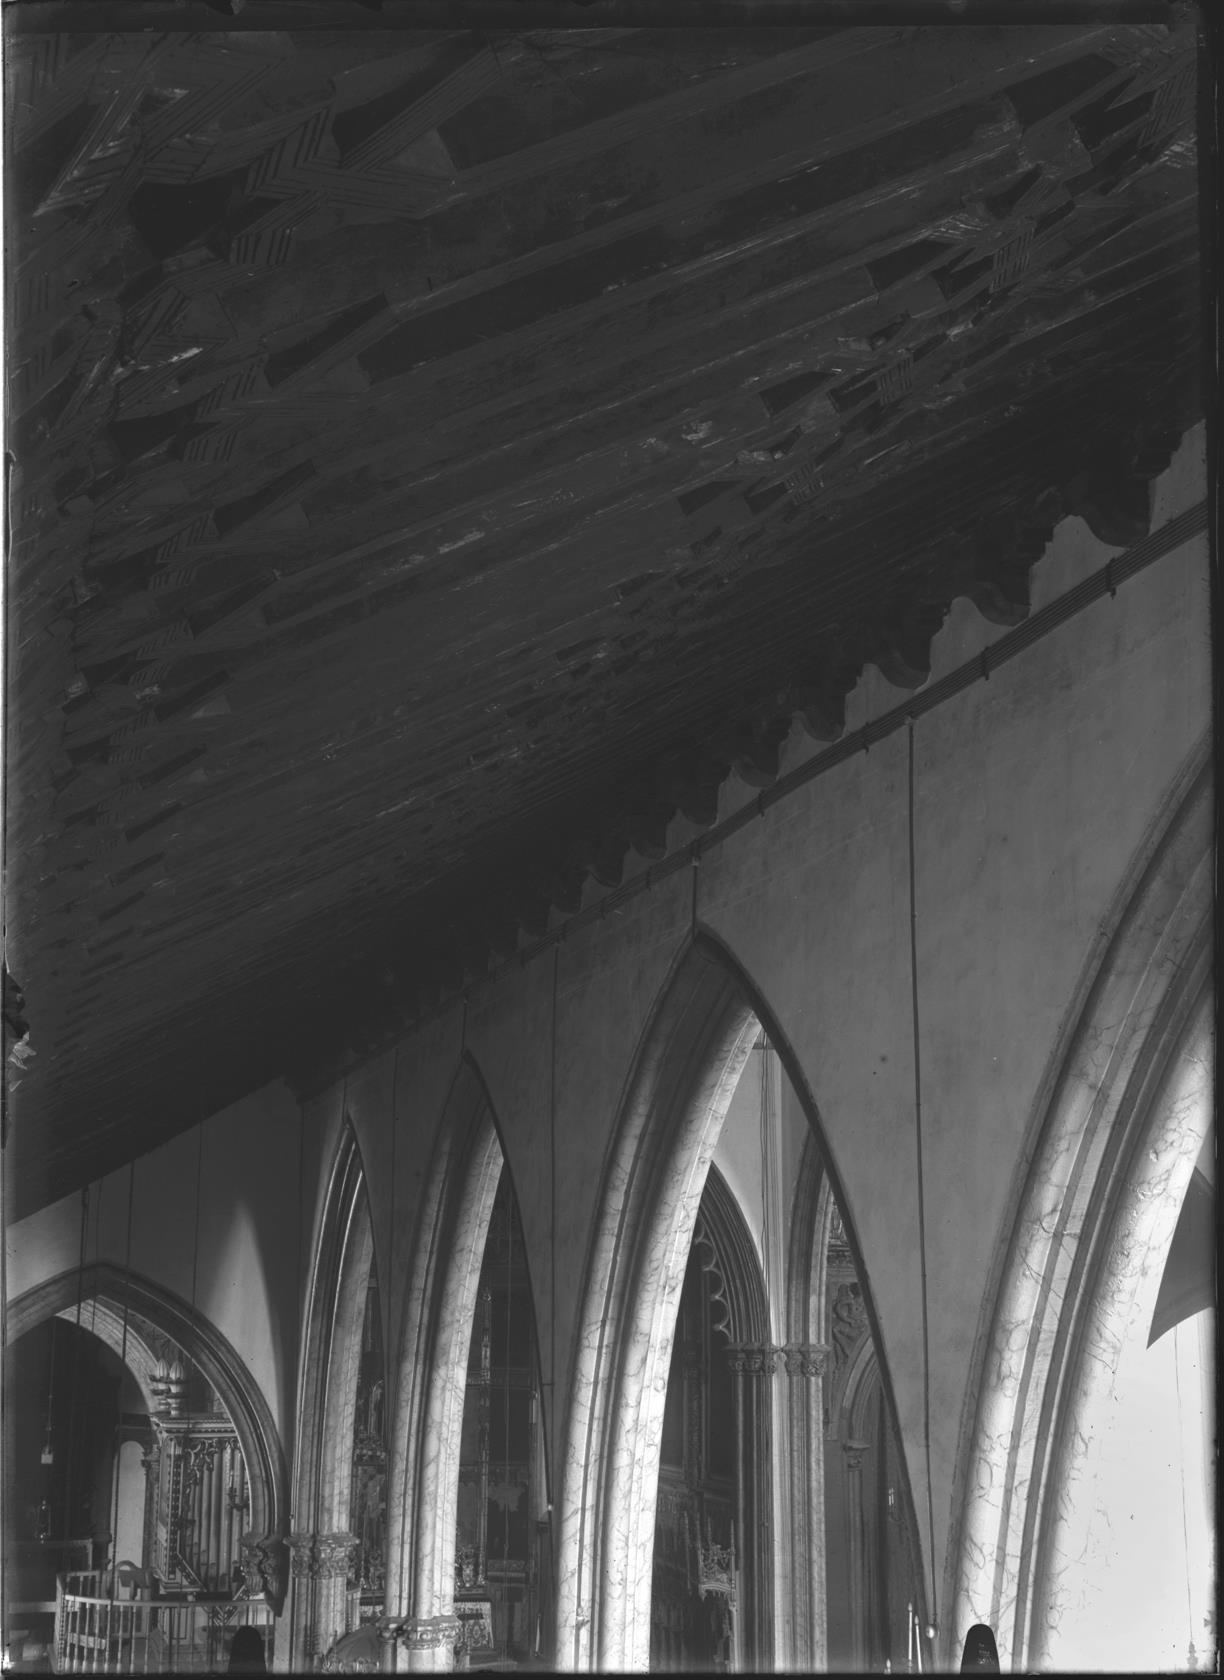 Pormenor de um teto e dos arcos de uma igreja